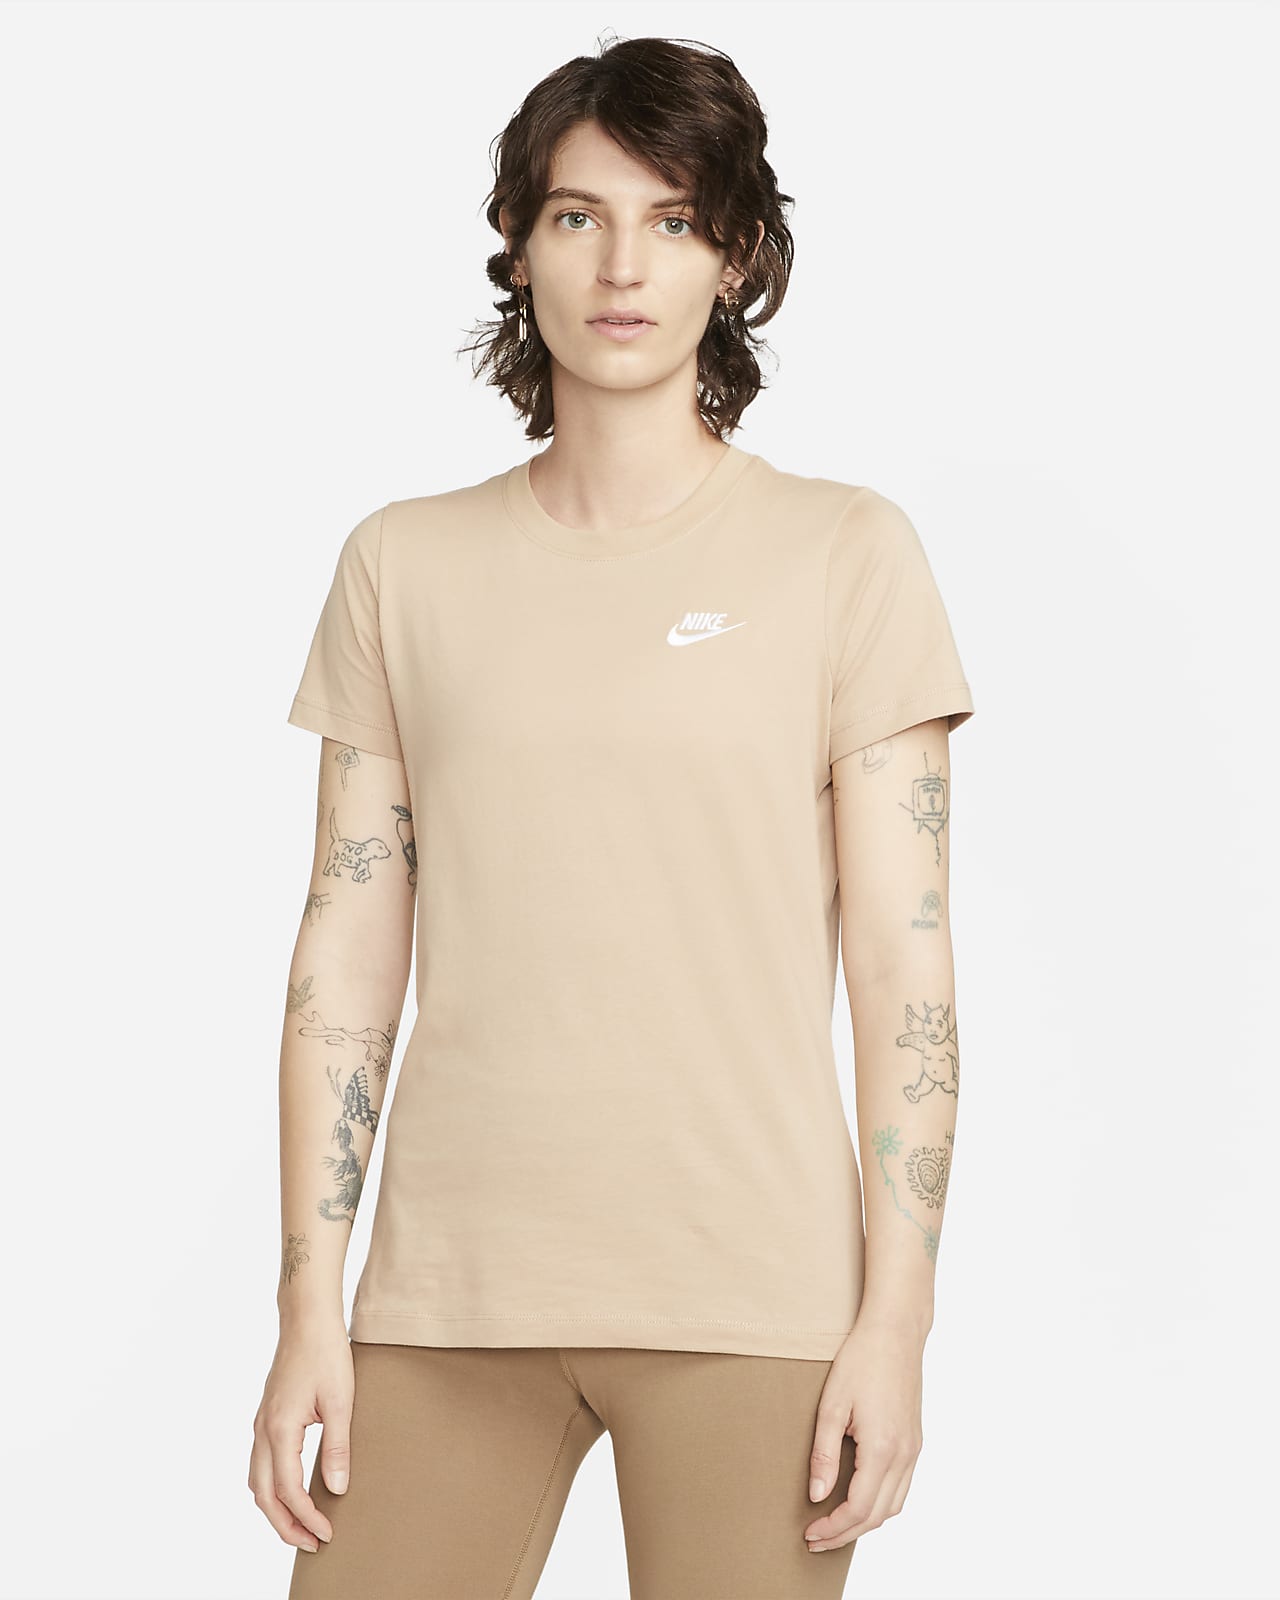 Women's T-shirt Nike Club